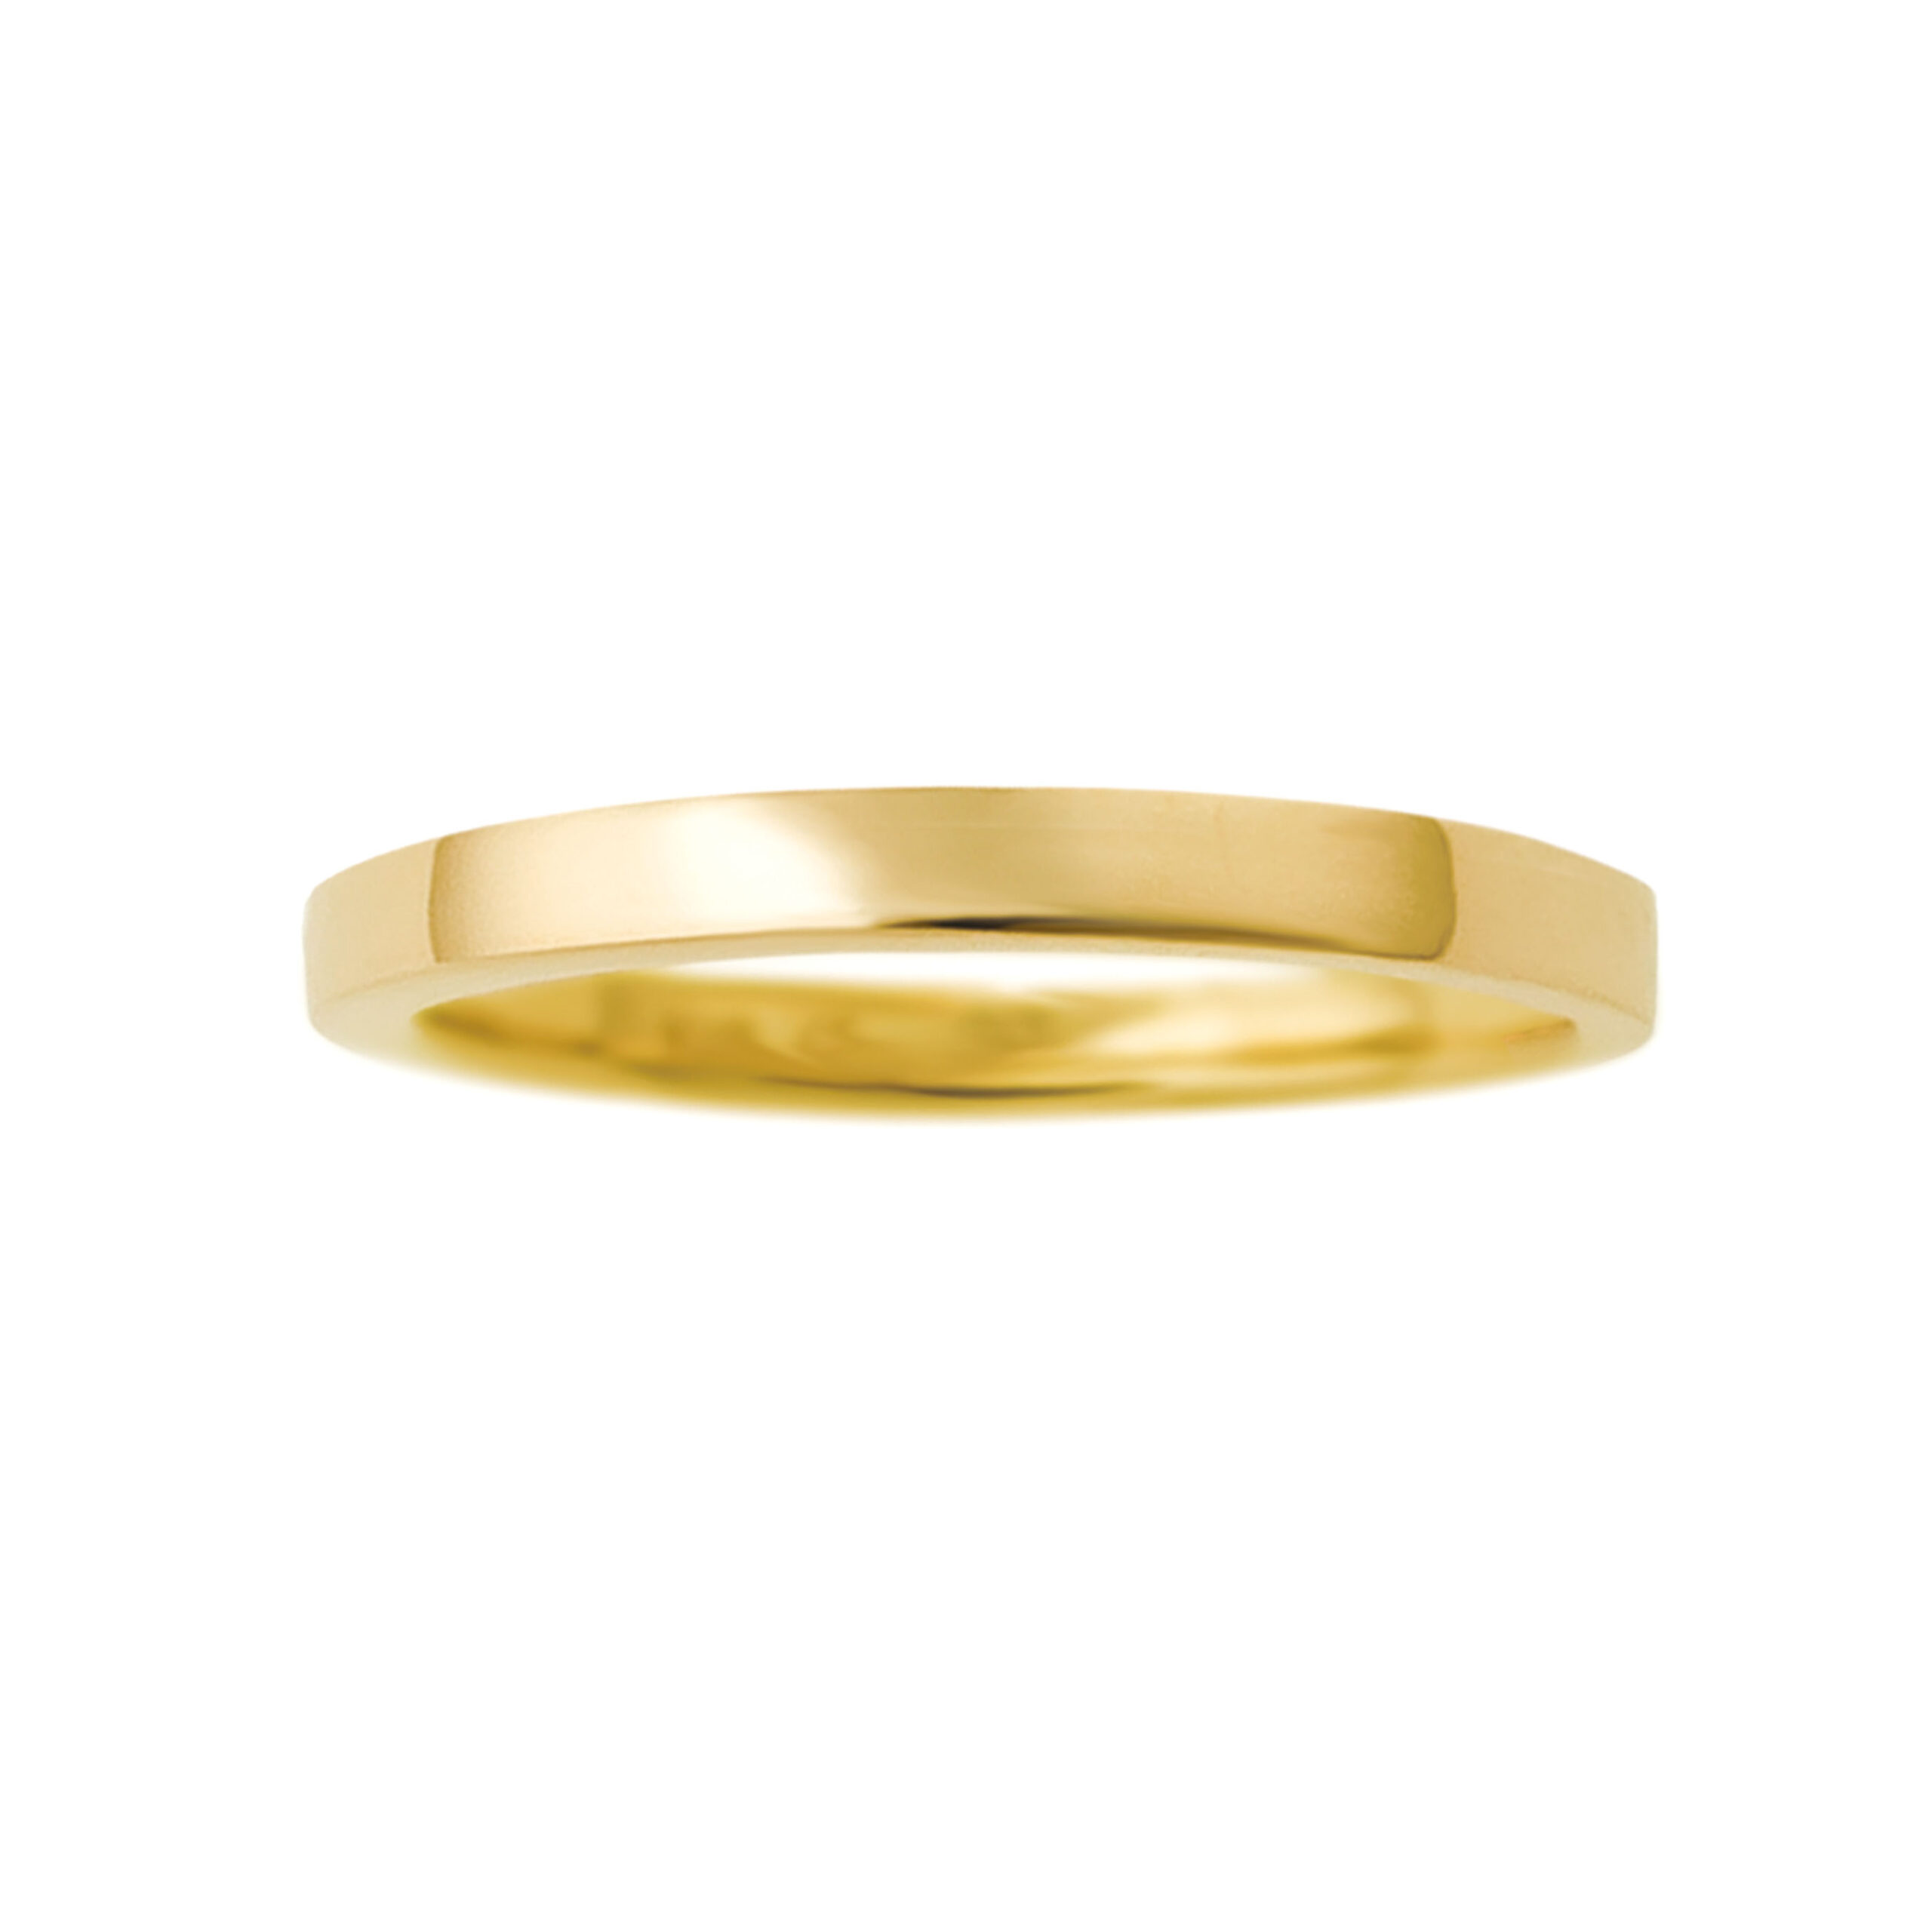 イエローゴールドの結婚指輪のイメージ